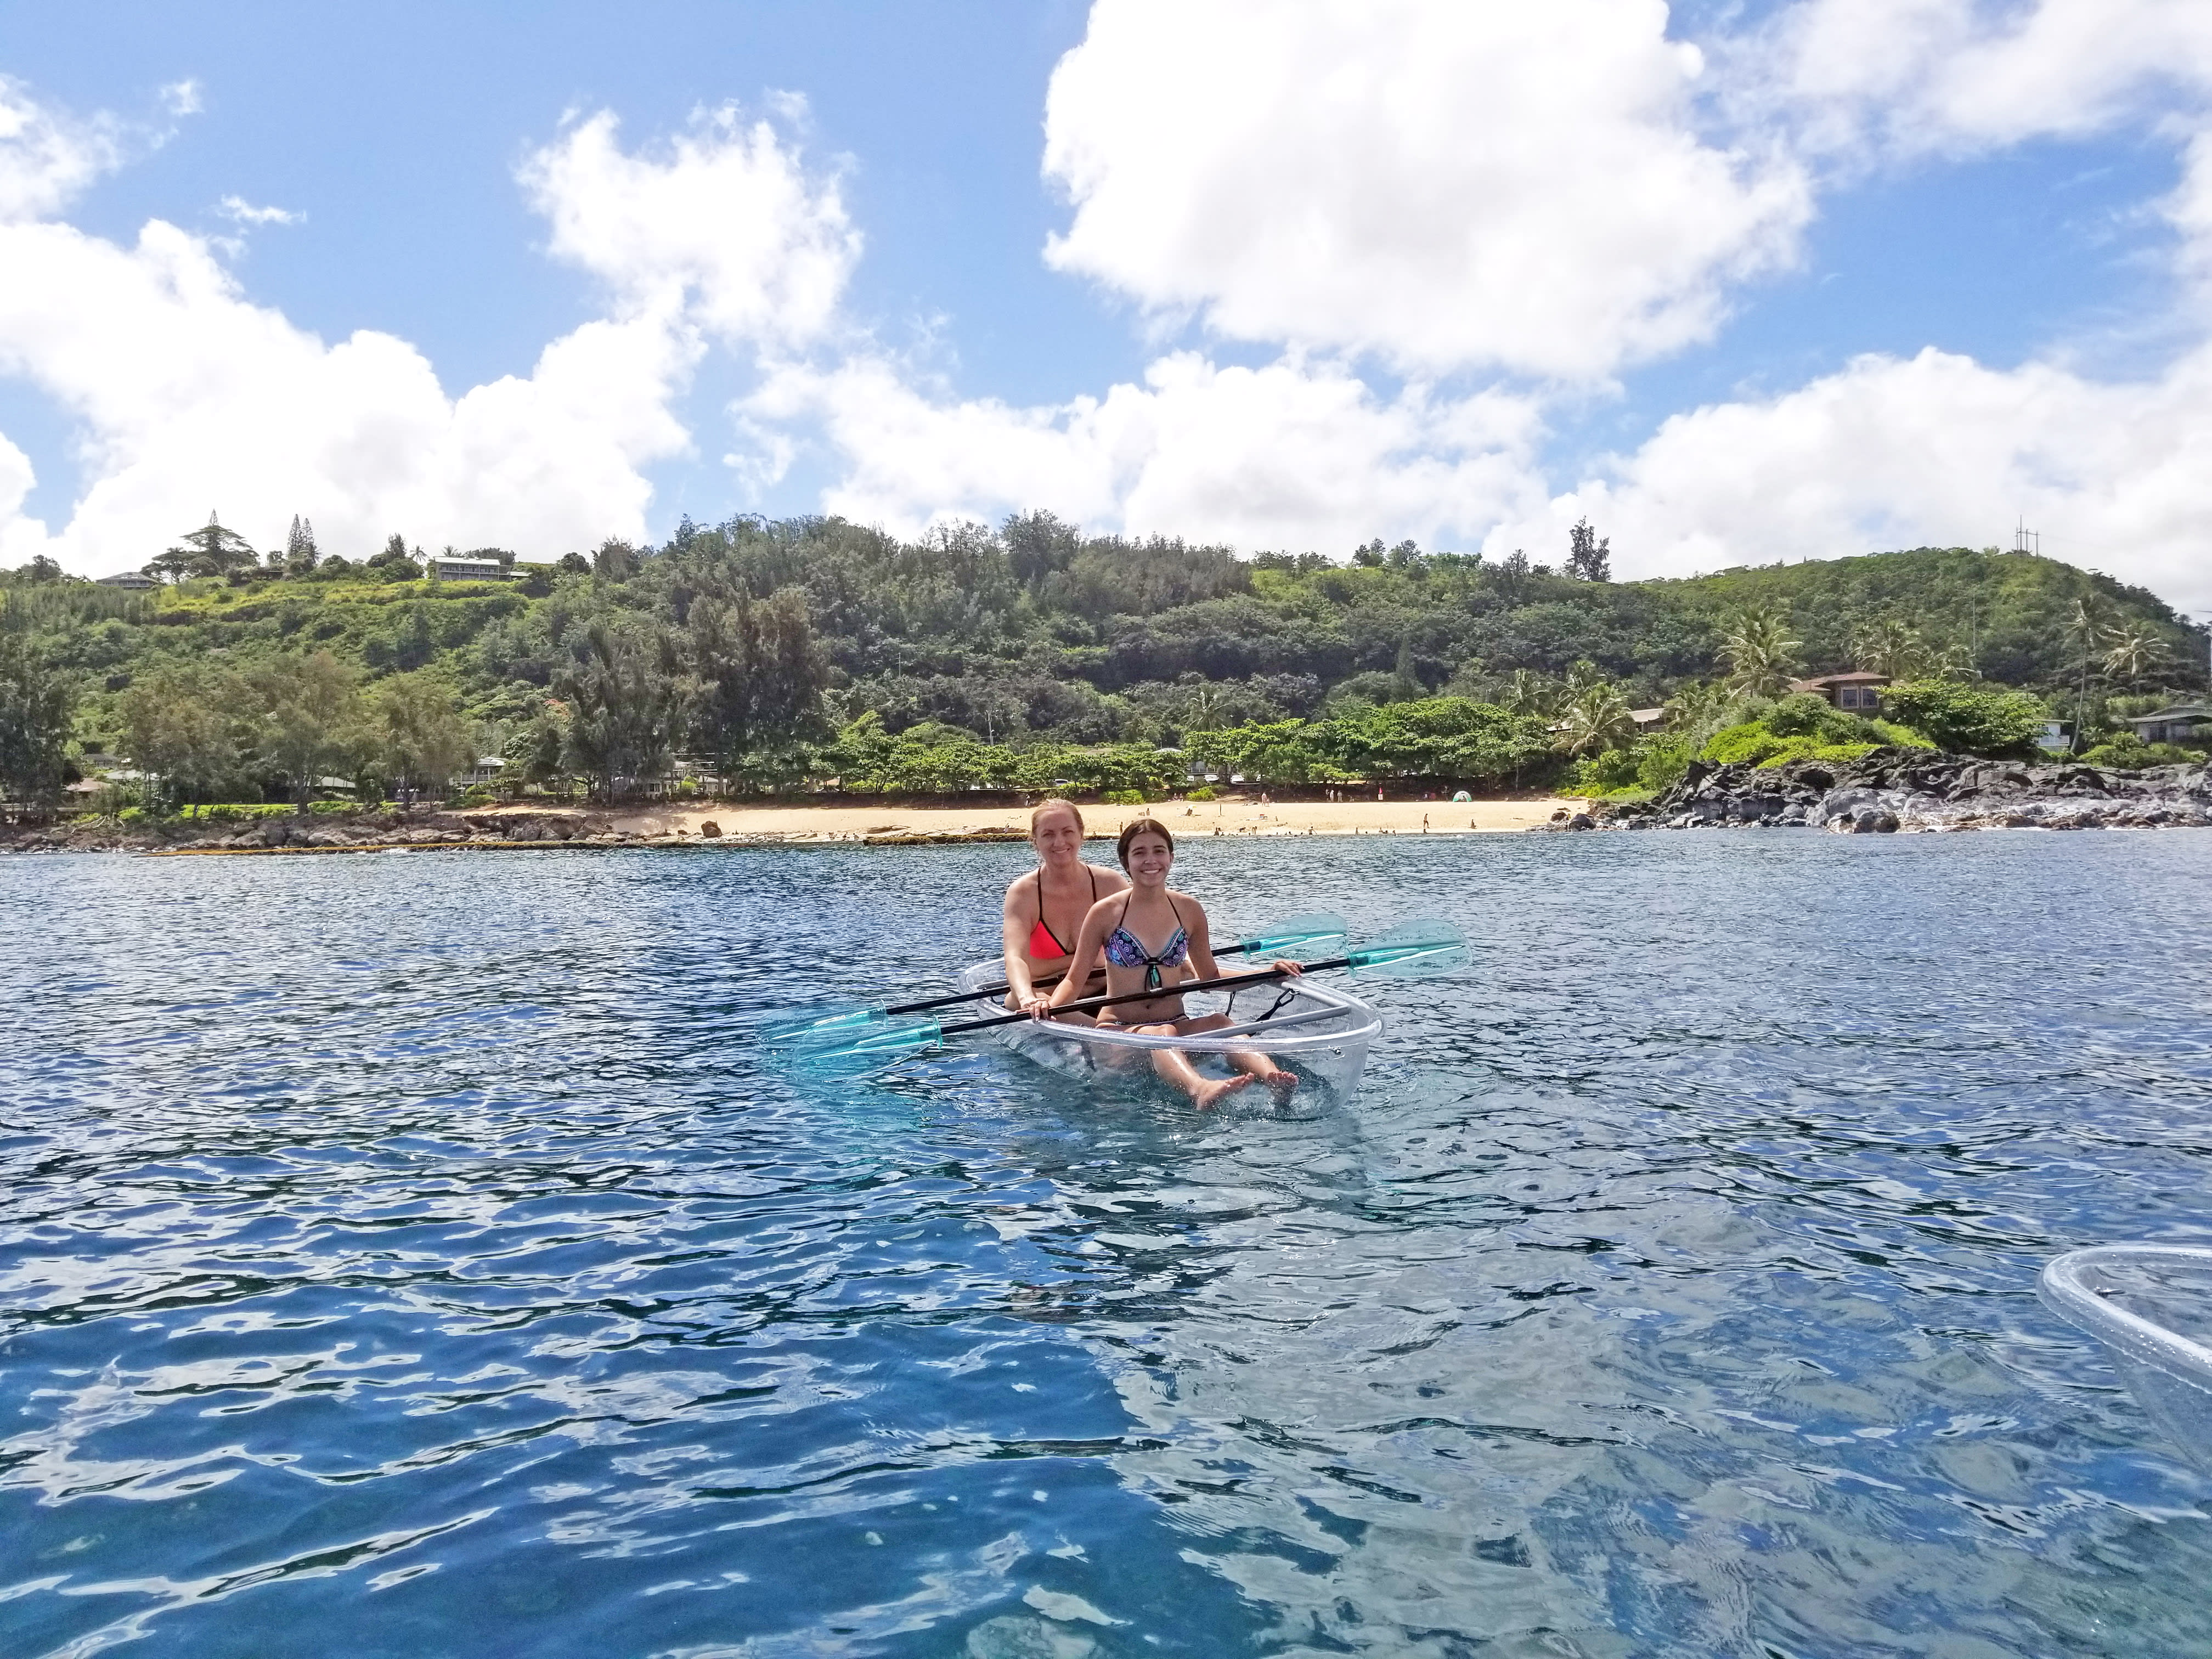 カヤック (マリンスポーツ) | ハワイの観光・オプショナルツアー専門